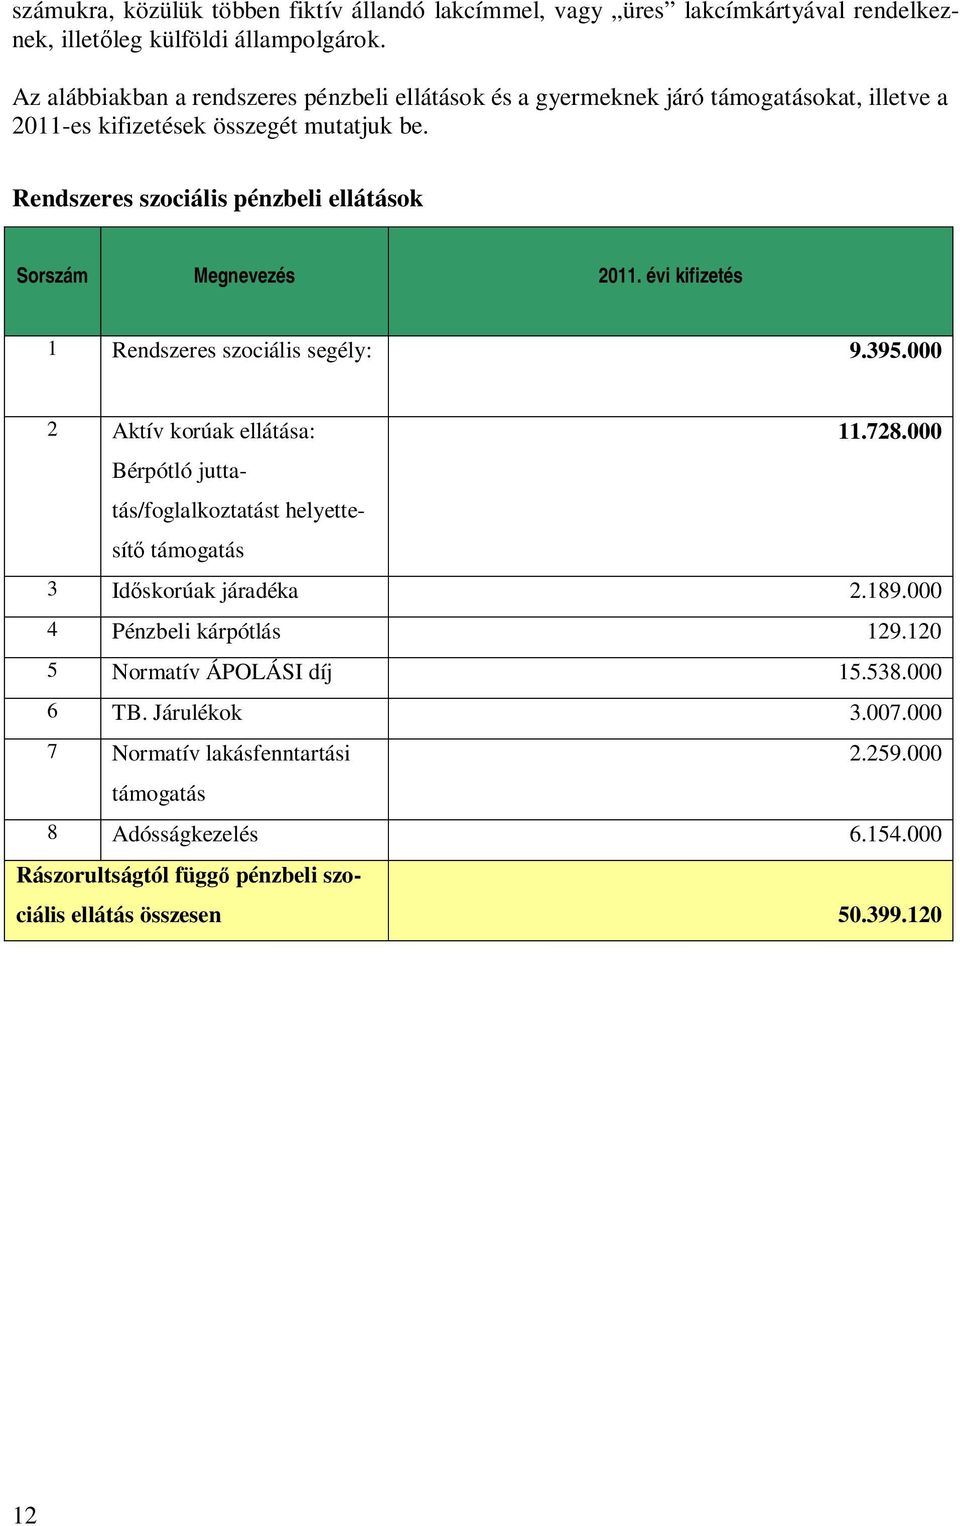 Rendszeres szociális pénzbeli ellátások Sorszám Megnevezés 2011. évi kifizetés 1 Rendszeres szociális segély: 9.395.000 2 Aktív korúak ellátása: 11.728.